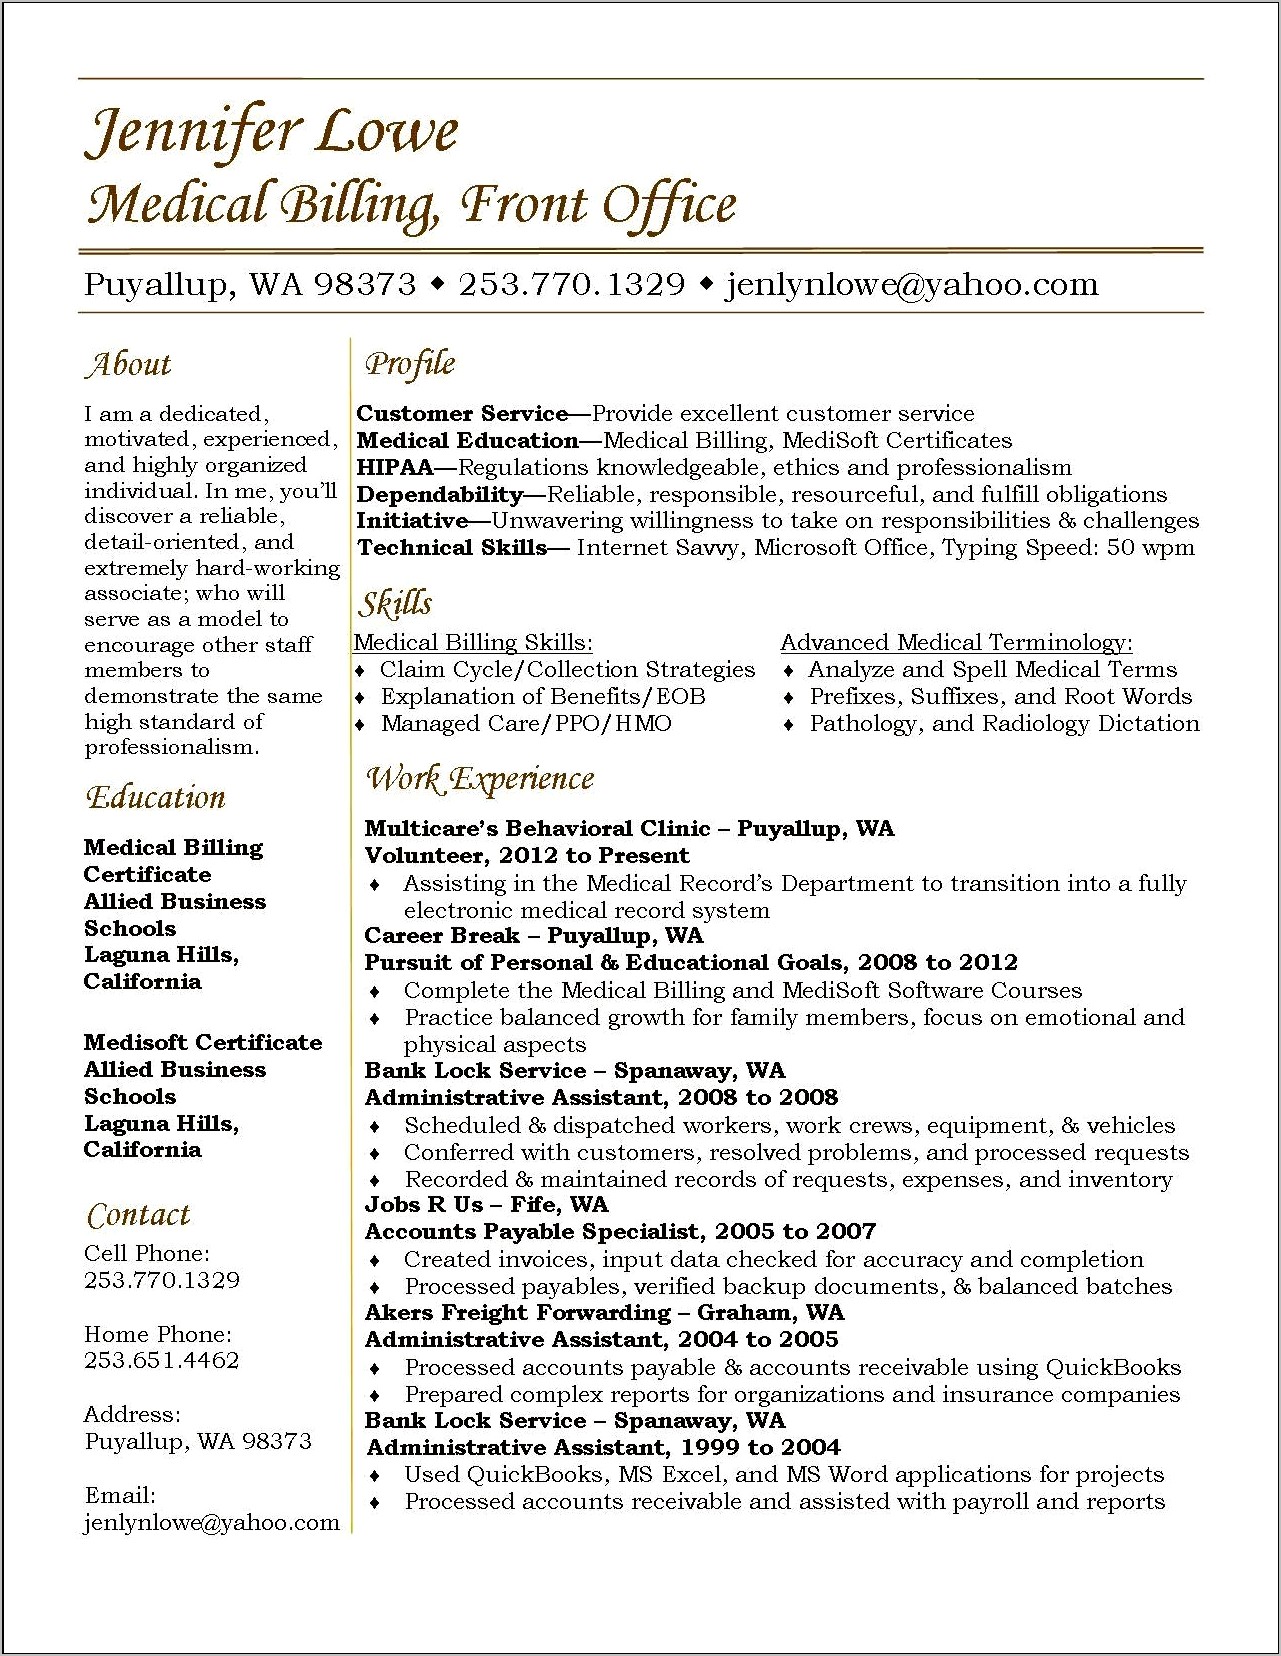 Sample Resume Format For Medical Biller Medical Assistant